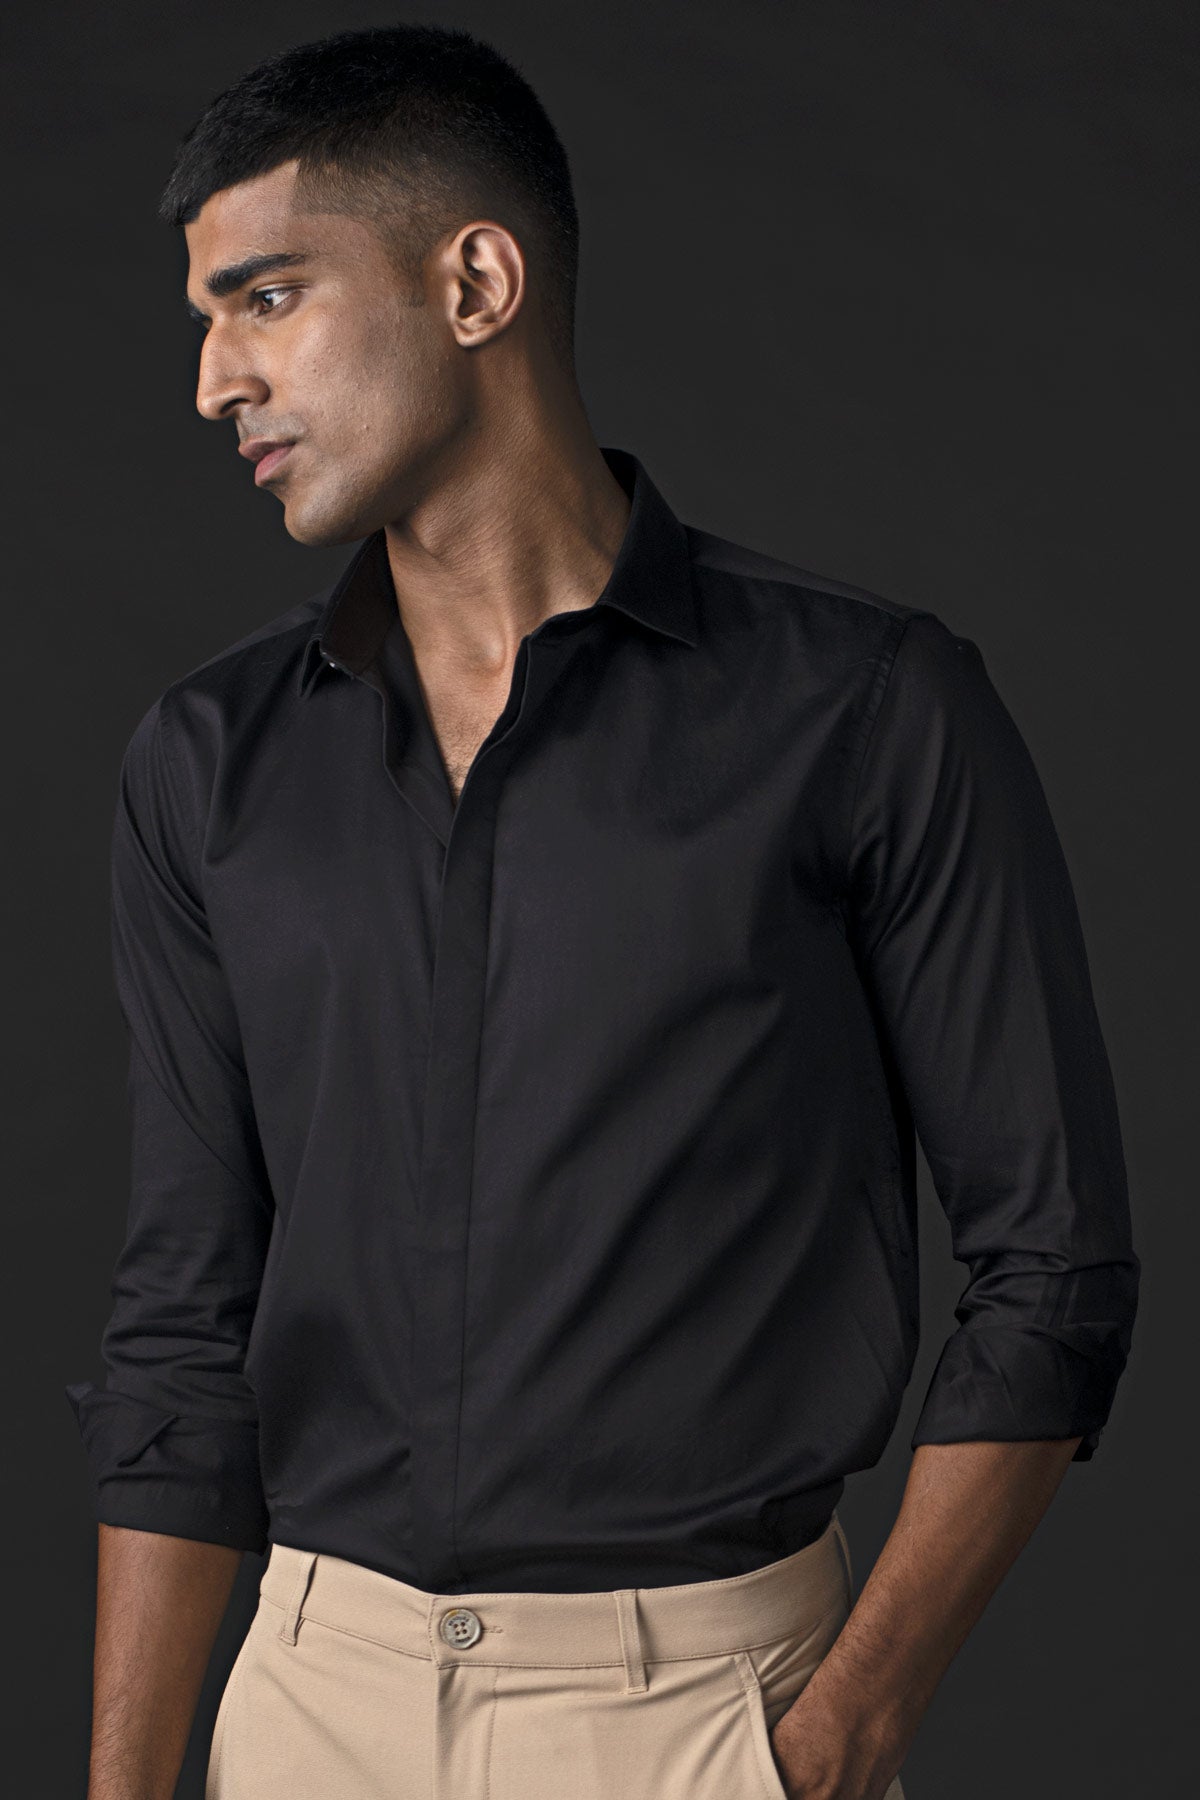 Buy Elite Black Shirt For Men's